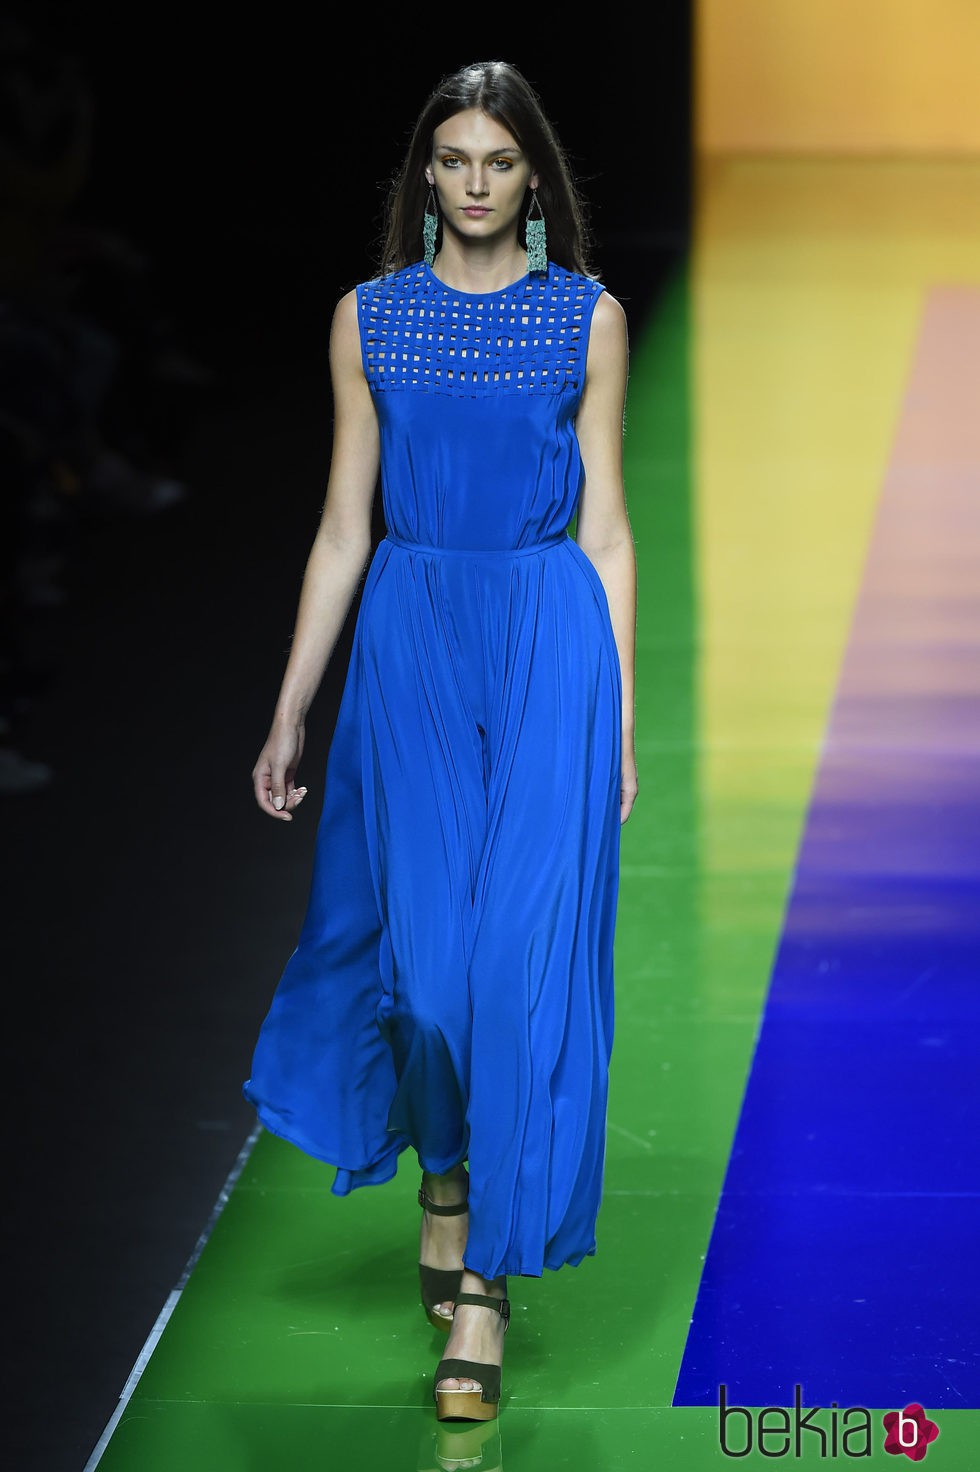 Vestido azul largo de la colección de primavera/verano 2016 de Ailanto en Madrid Fashion Week